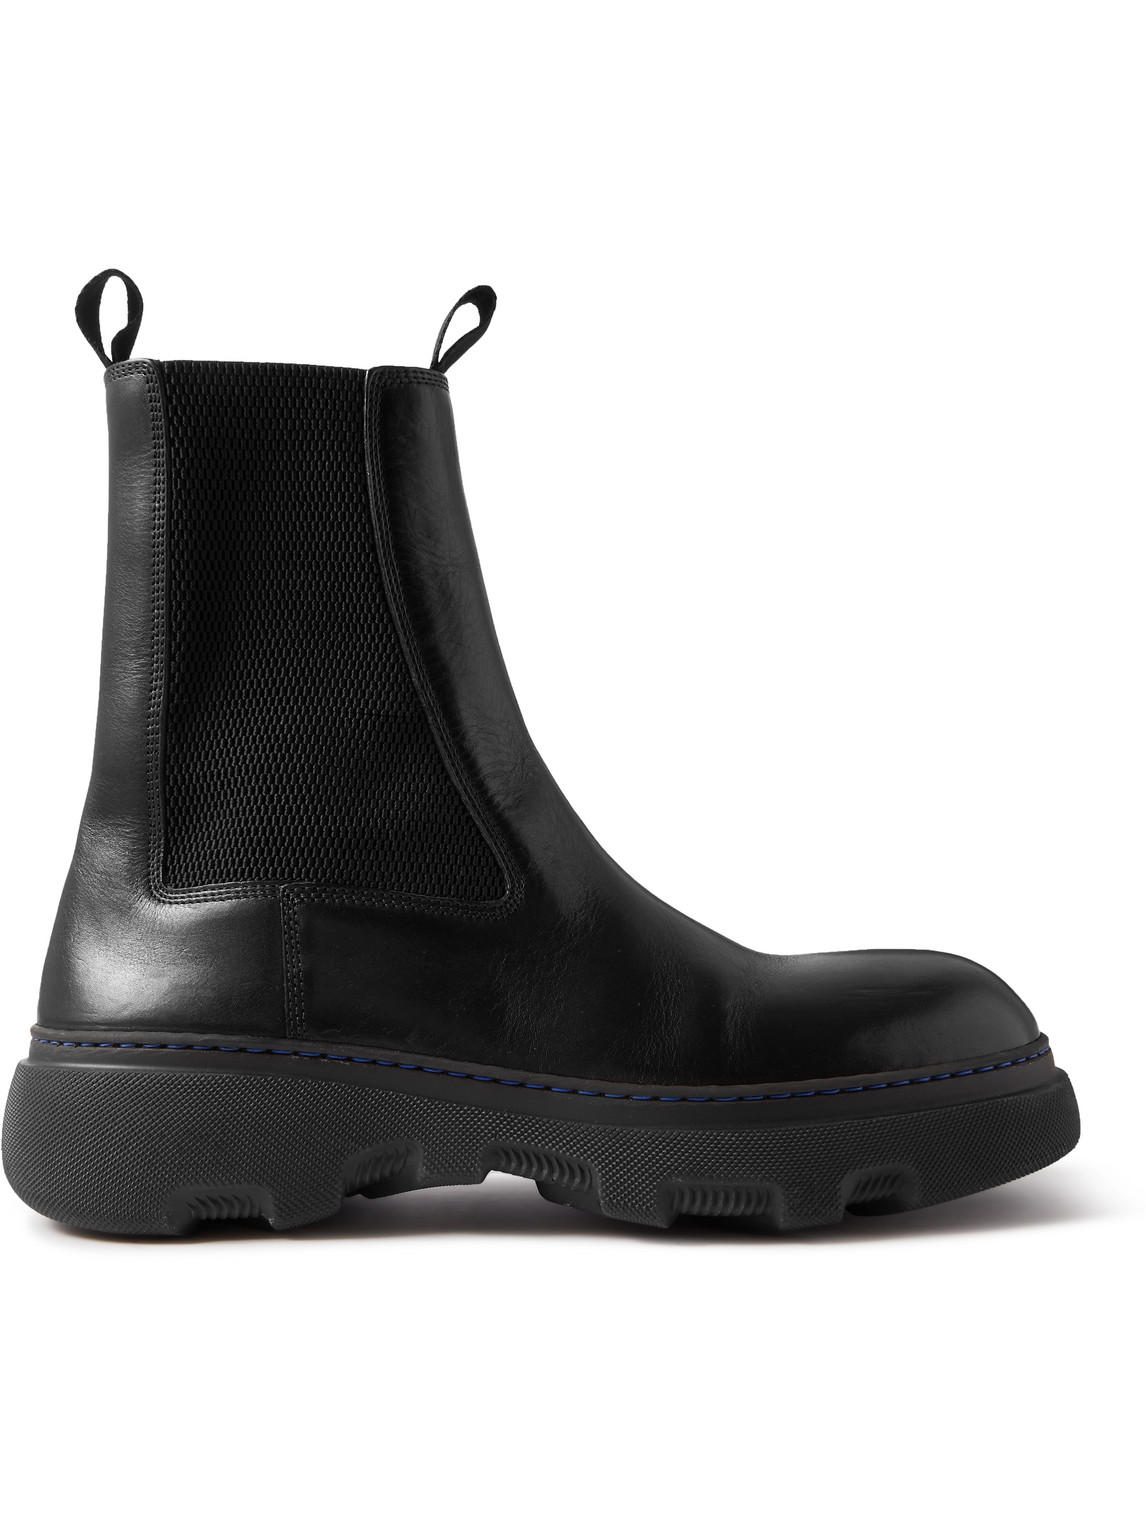 Burberry - Leather Chelsea Boots - Men - Black - EU 45 von Burberry